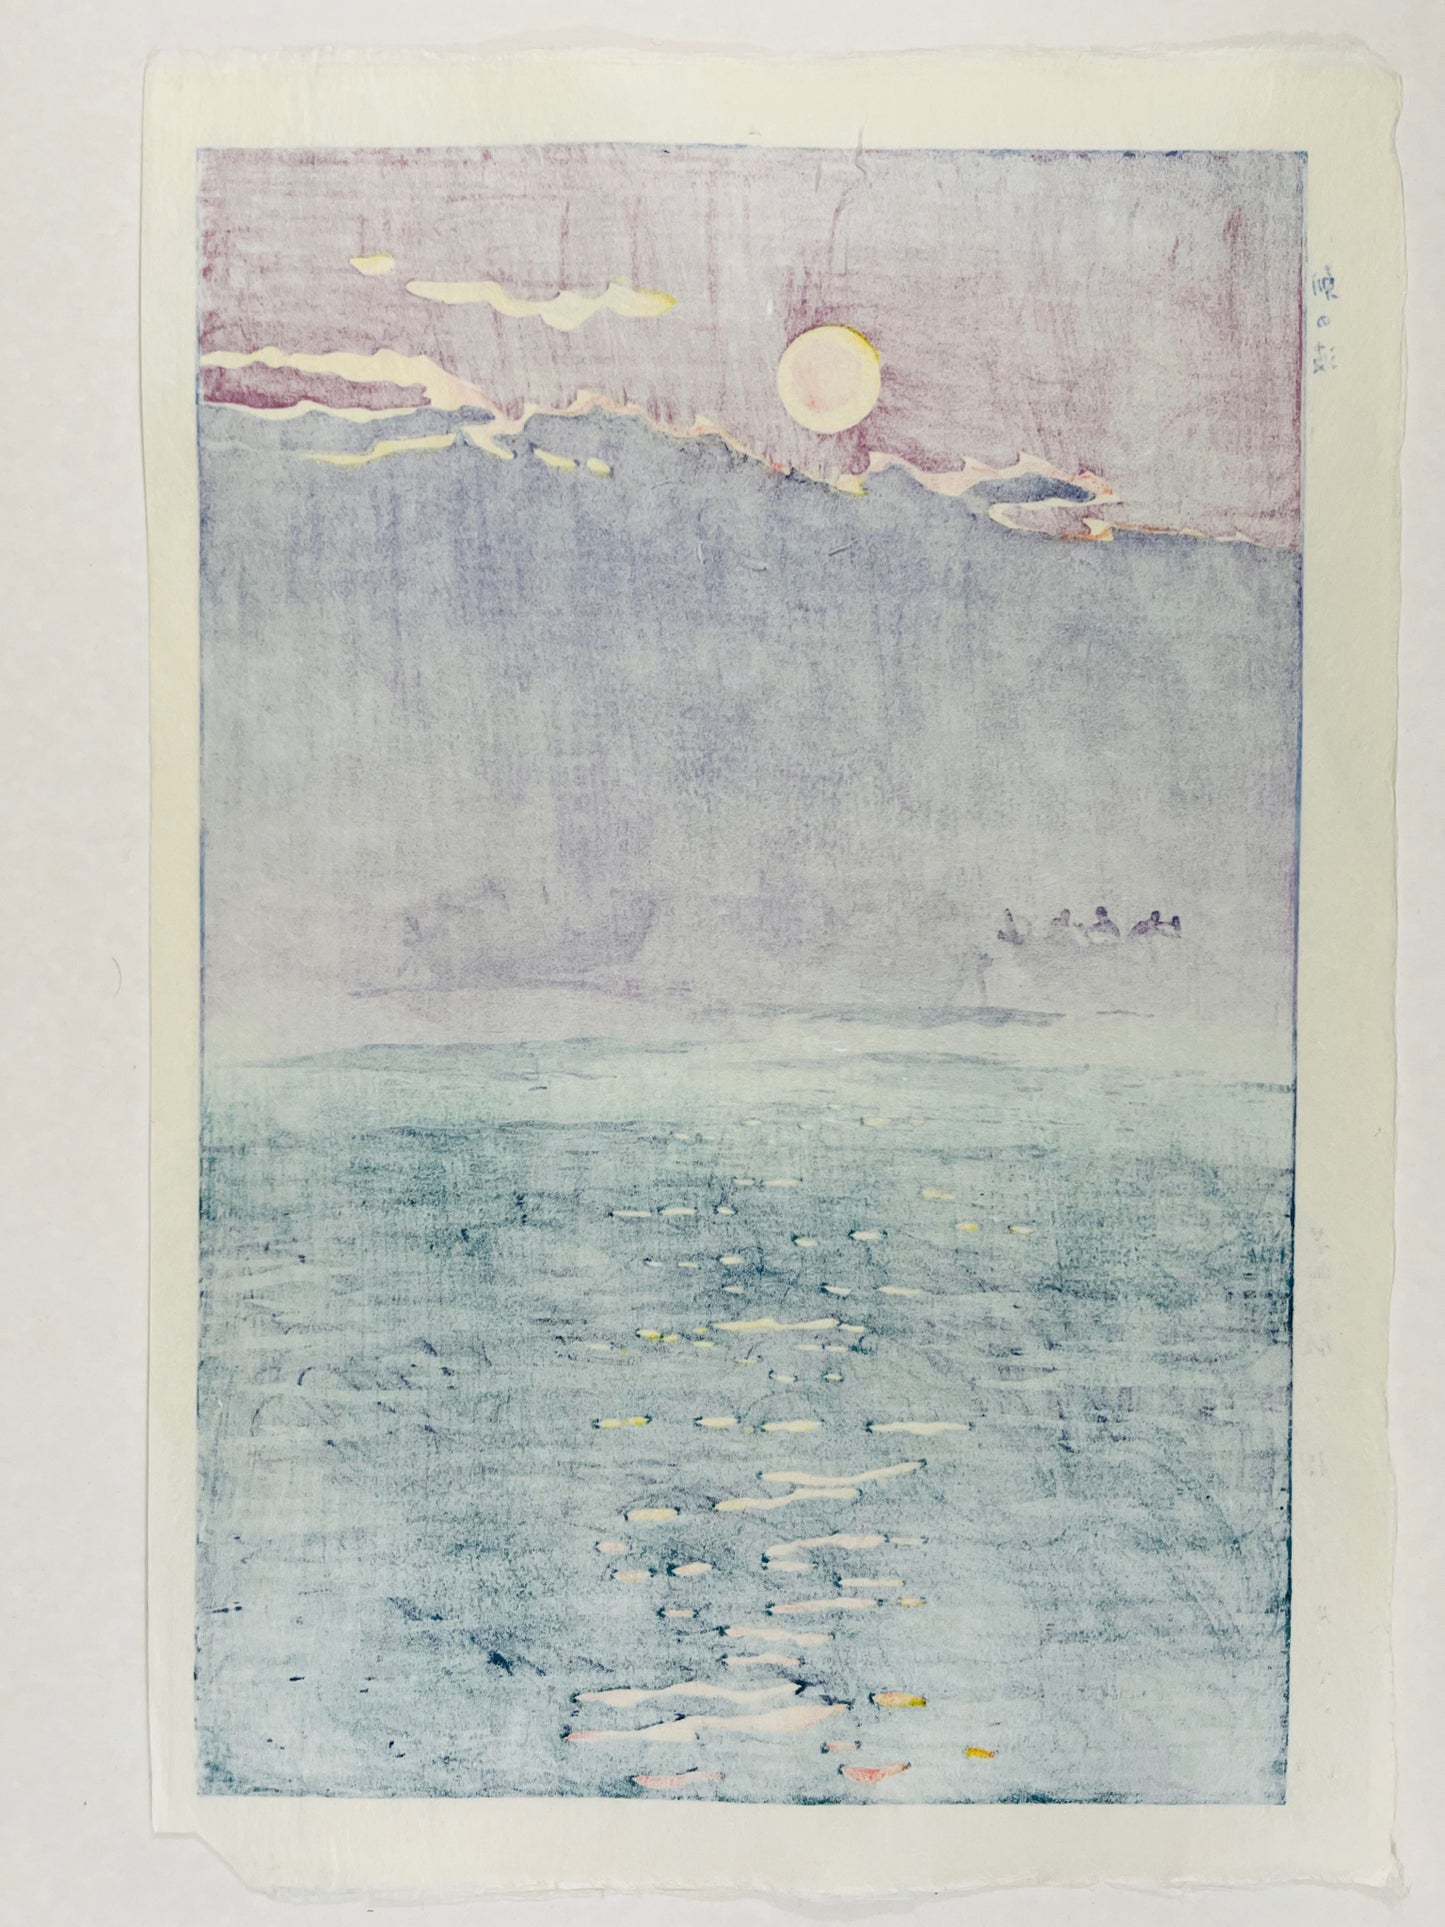 estampe japonaise de kasamatsu soleil levant sur le lac, dos de l'estampe